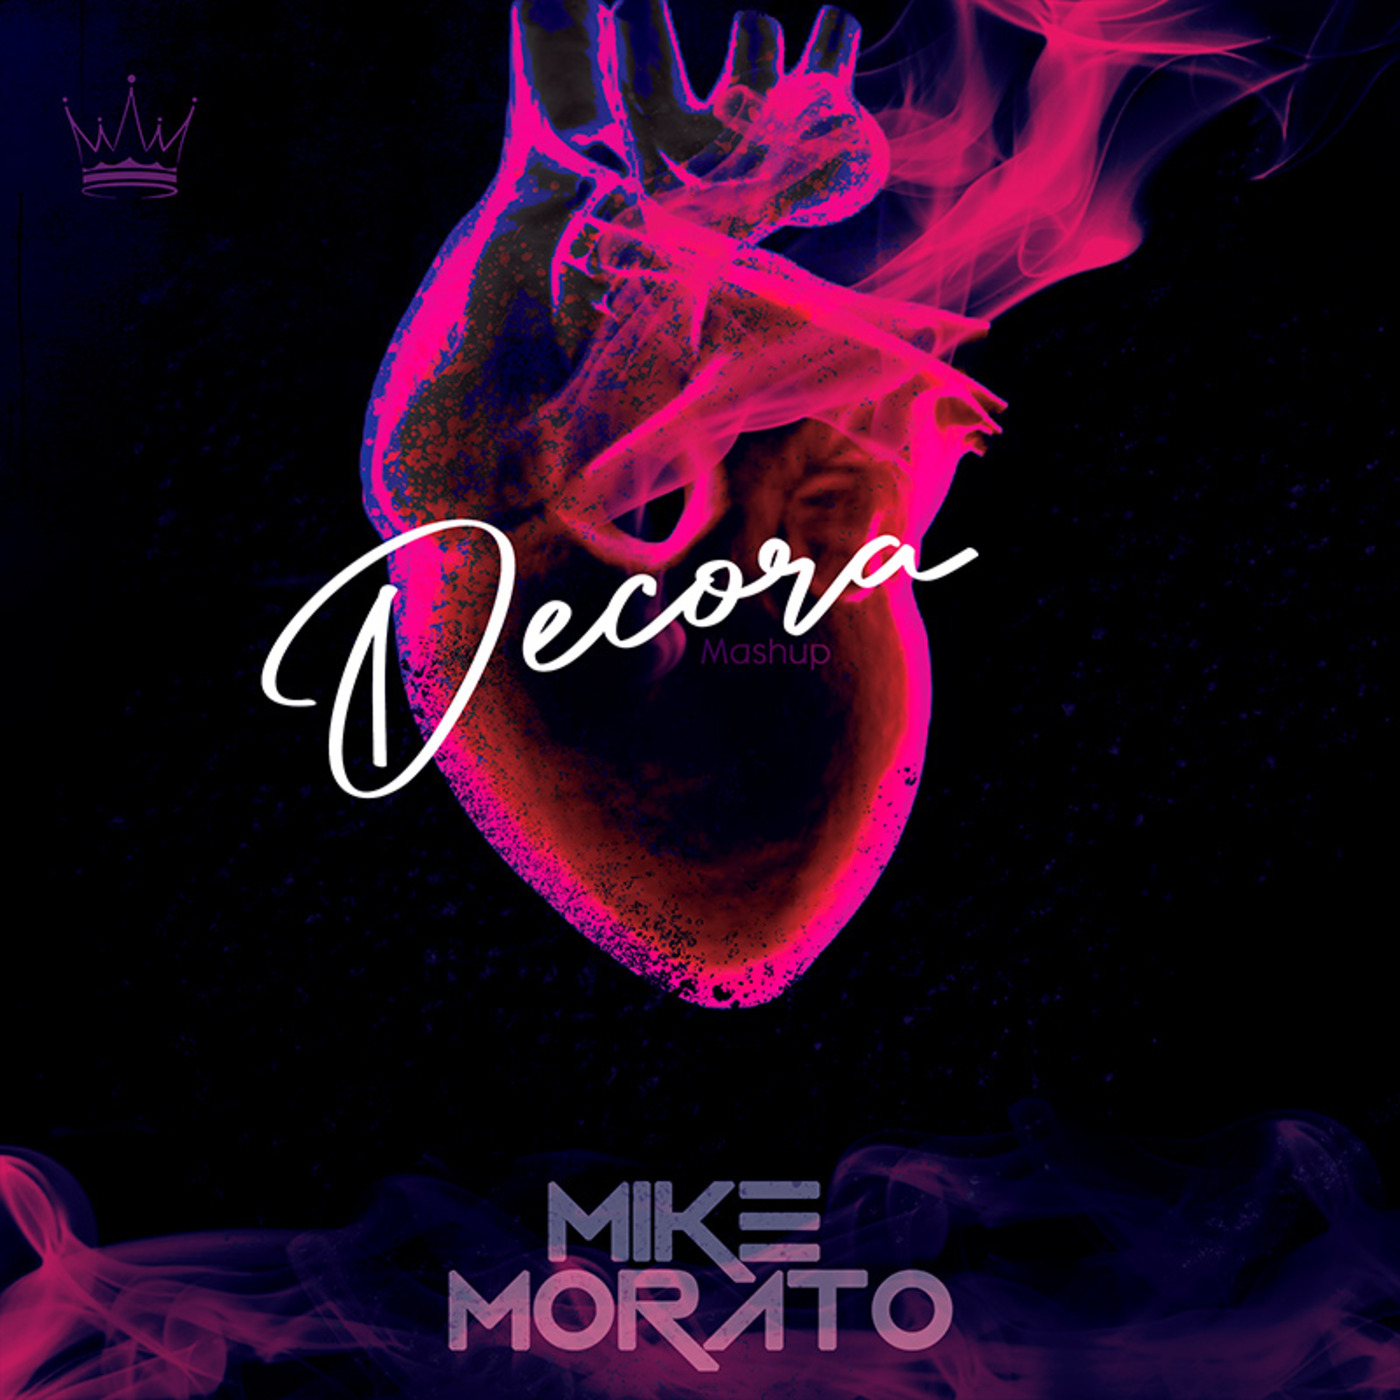 Mike Morato - Decora (Mashup)